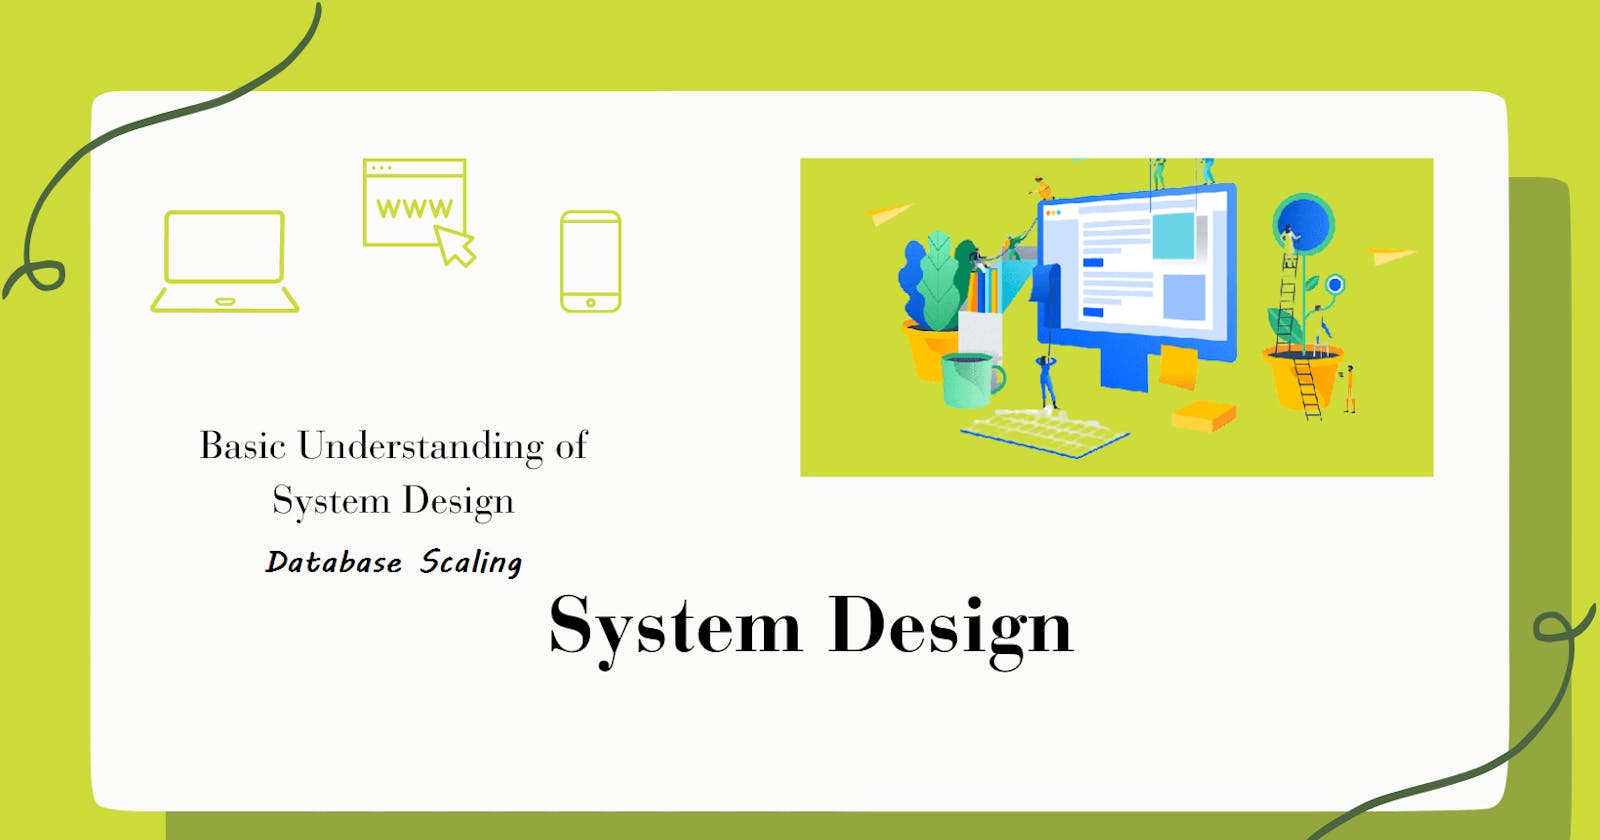 08 - System Design - Database Scaling